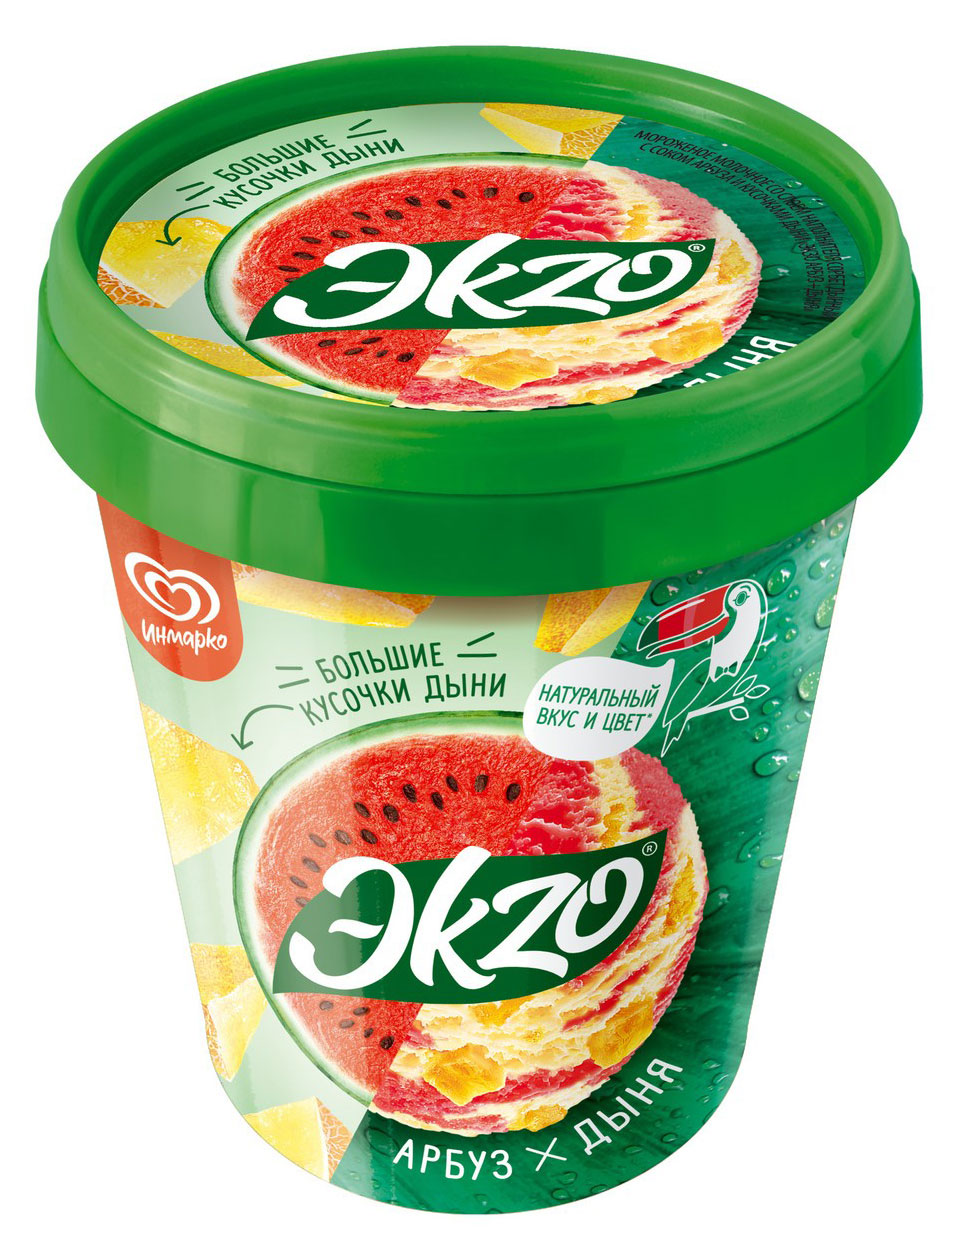 Мороженое молочное «Эkzo» арбуз дыня, 520 г